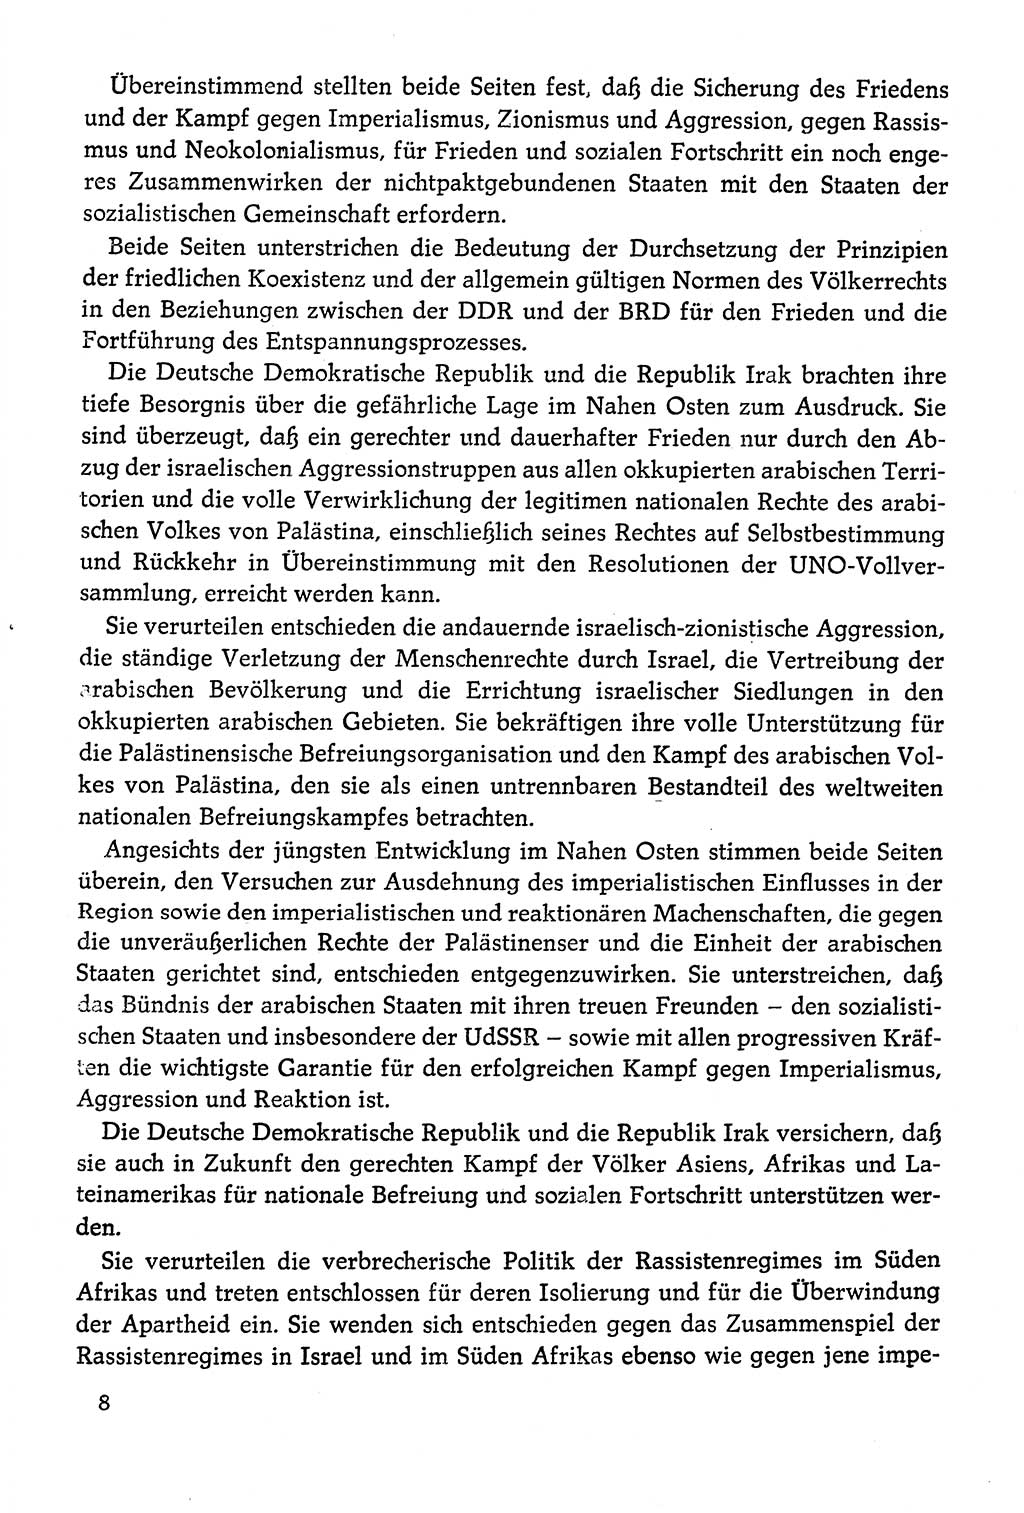 Dokumente der Sozialistischen Einheitspartei Deutschlands (SED) [Deutsche Demokratische Republik (DDR)] 1978-1979, Seite 8 (Dok. SED DDR 1978-1979, S. 8)